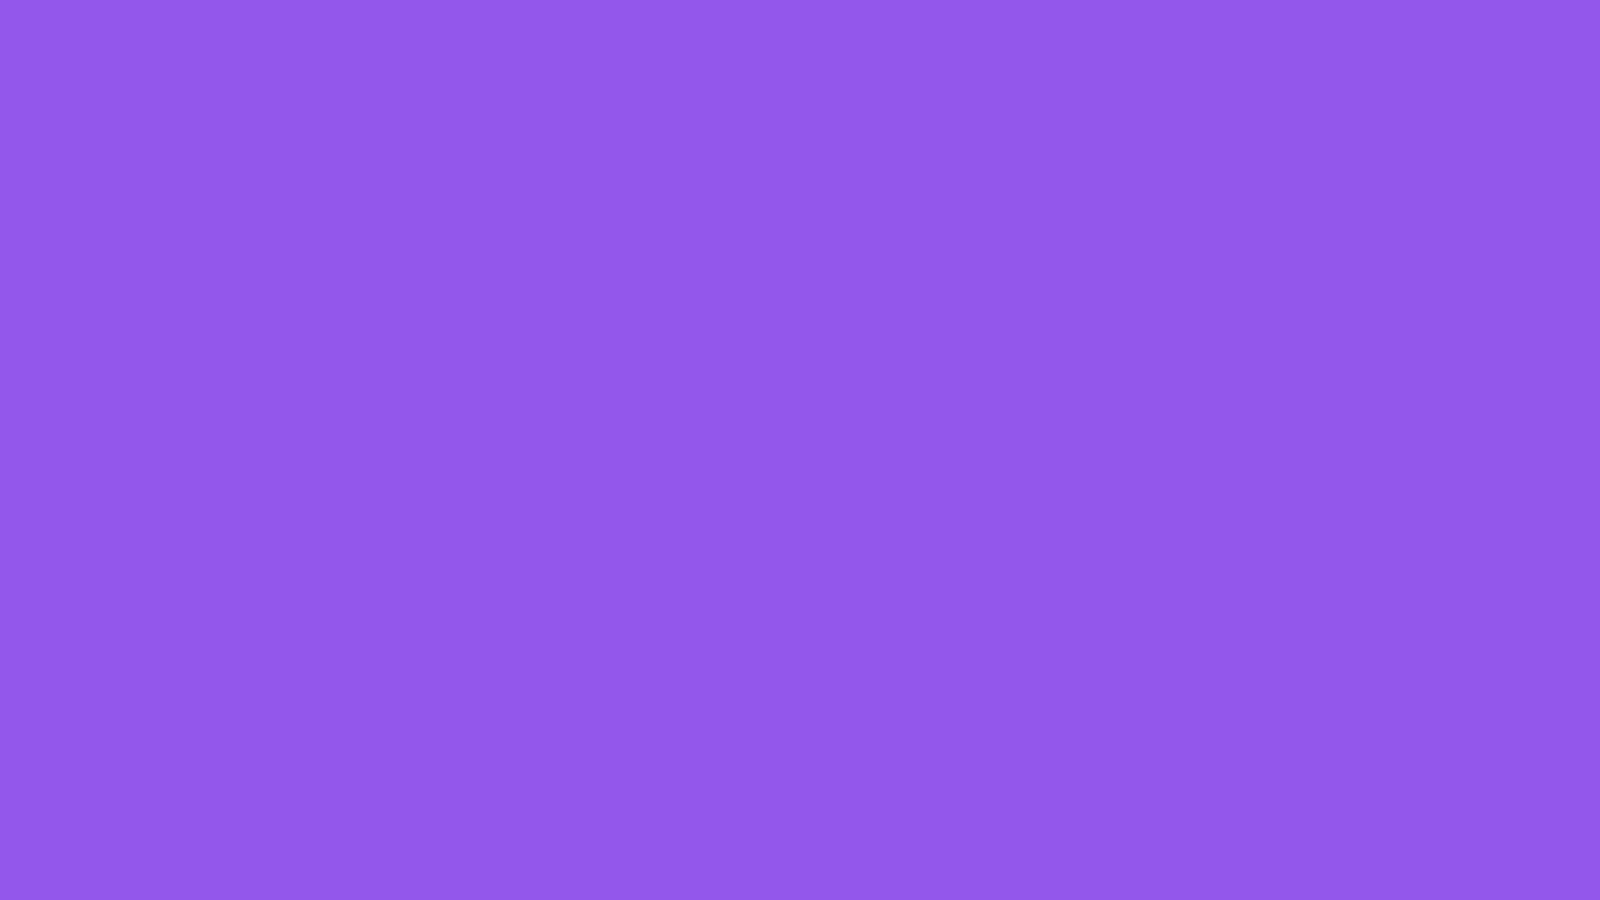 HD Wallpapers Color Purple - WallpaperSafari